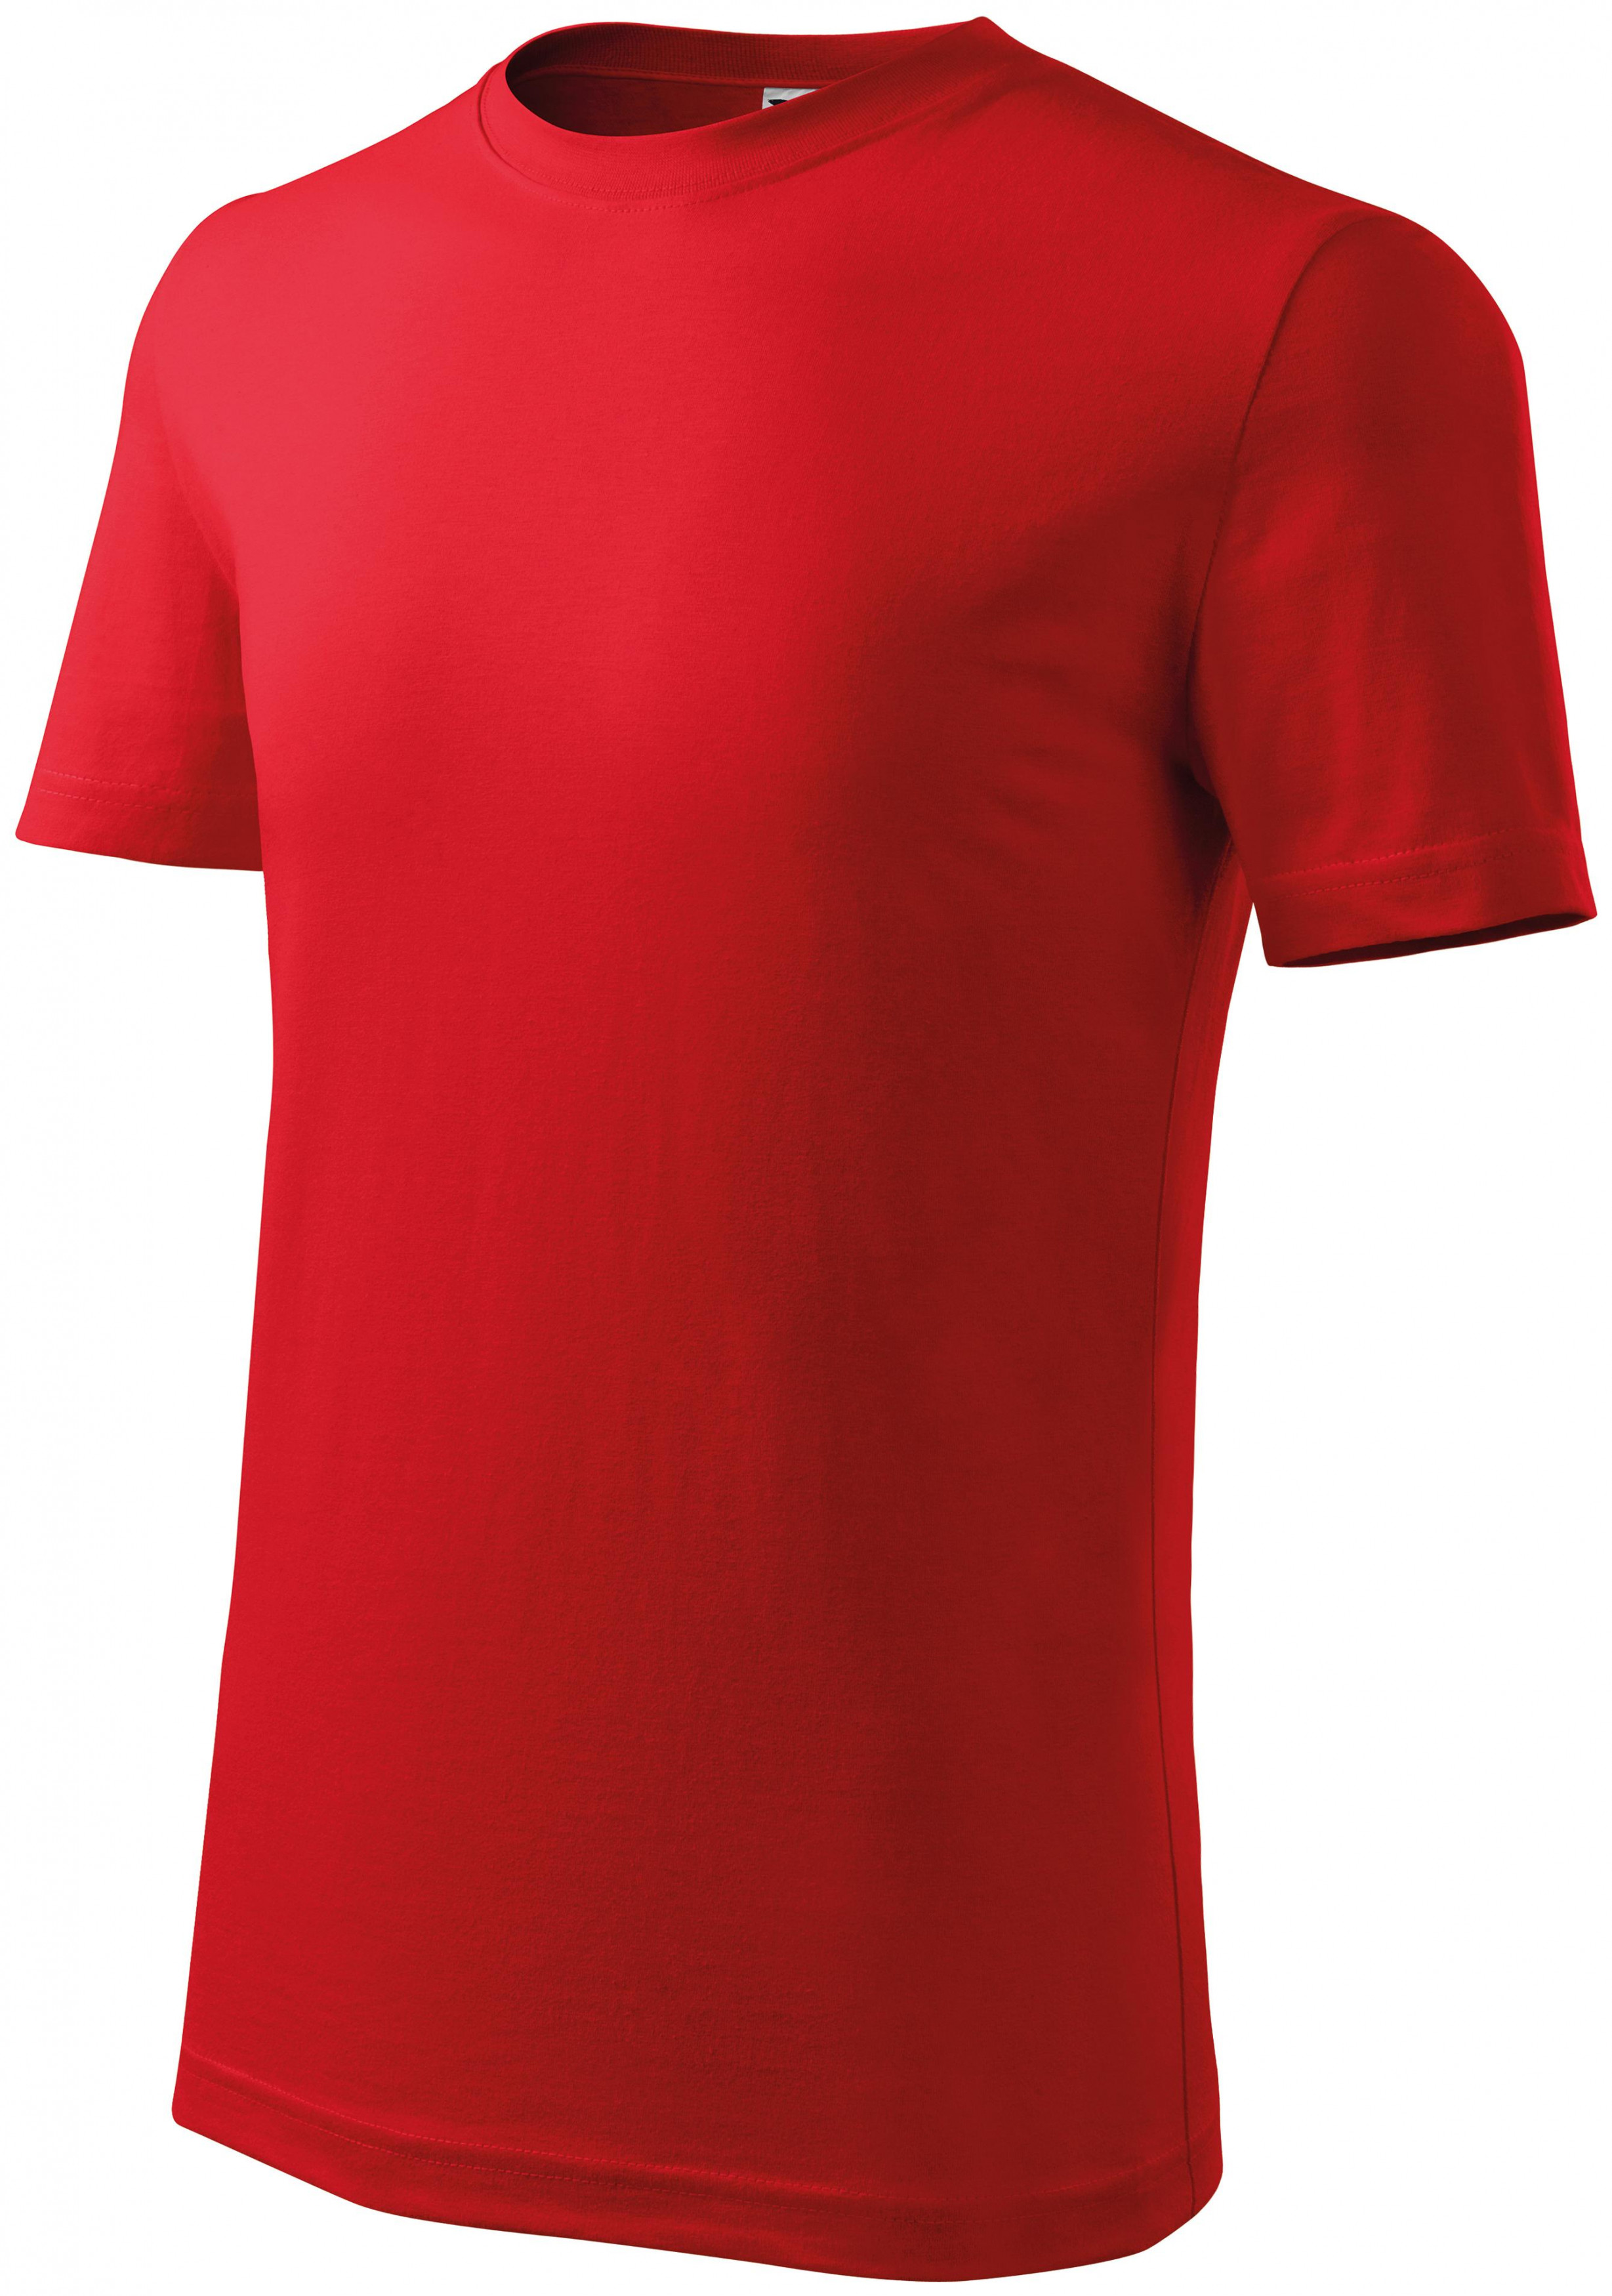 Detské tričko ľahšie, červená, 122cm / 6rokov